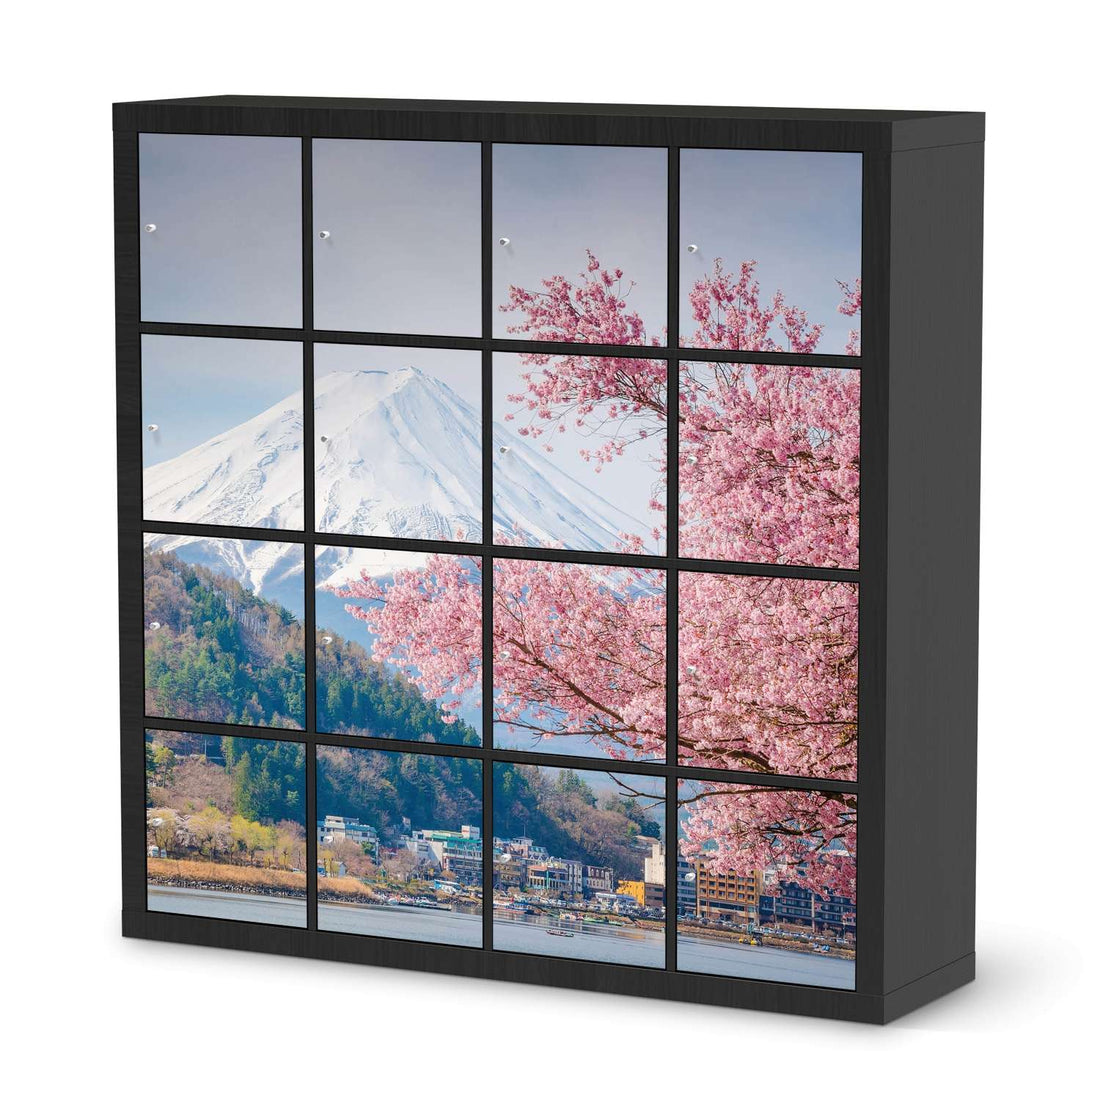 Selbstklebende Folie Mount Fuji - IKEA Expedit Regal 16 Türen - schwarz